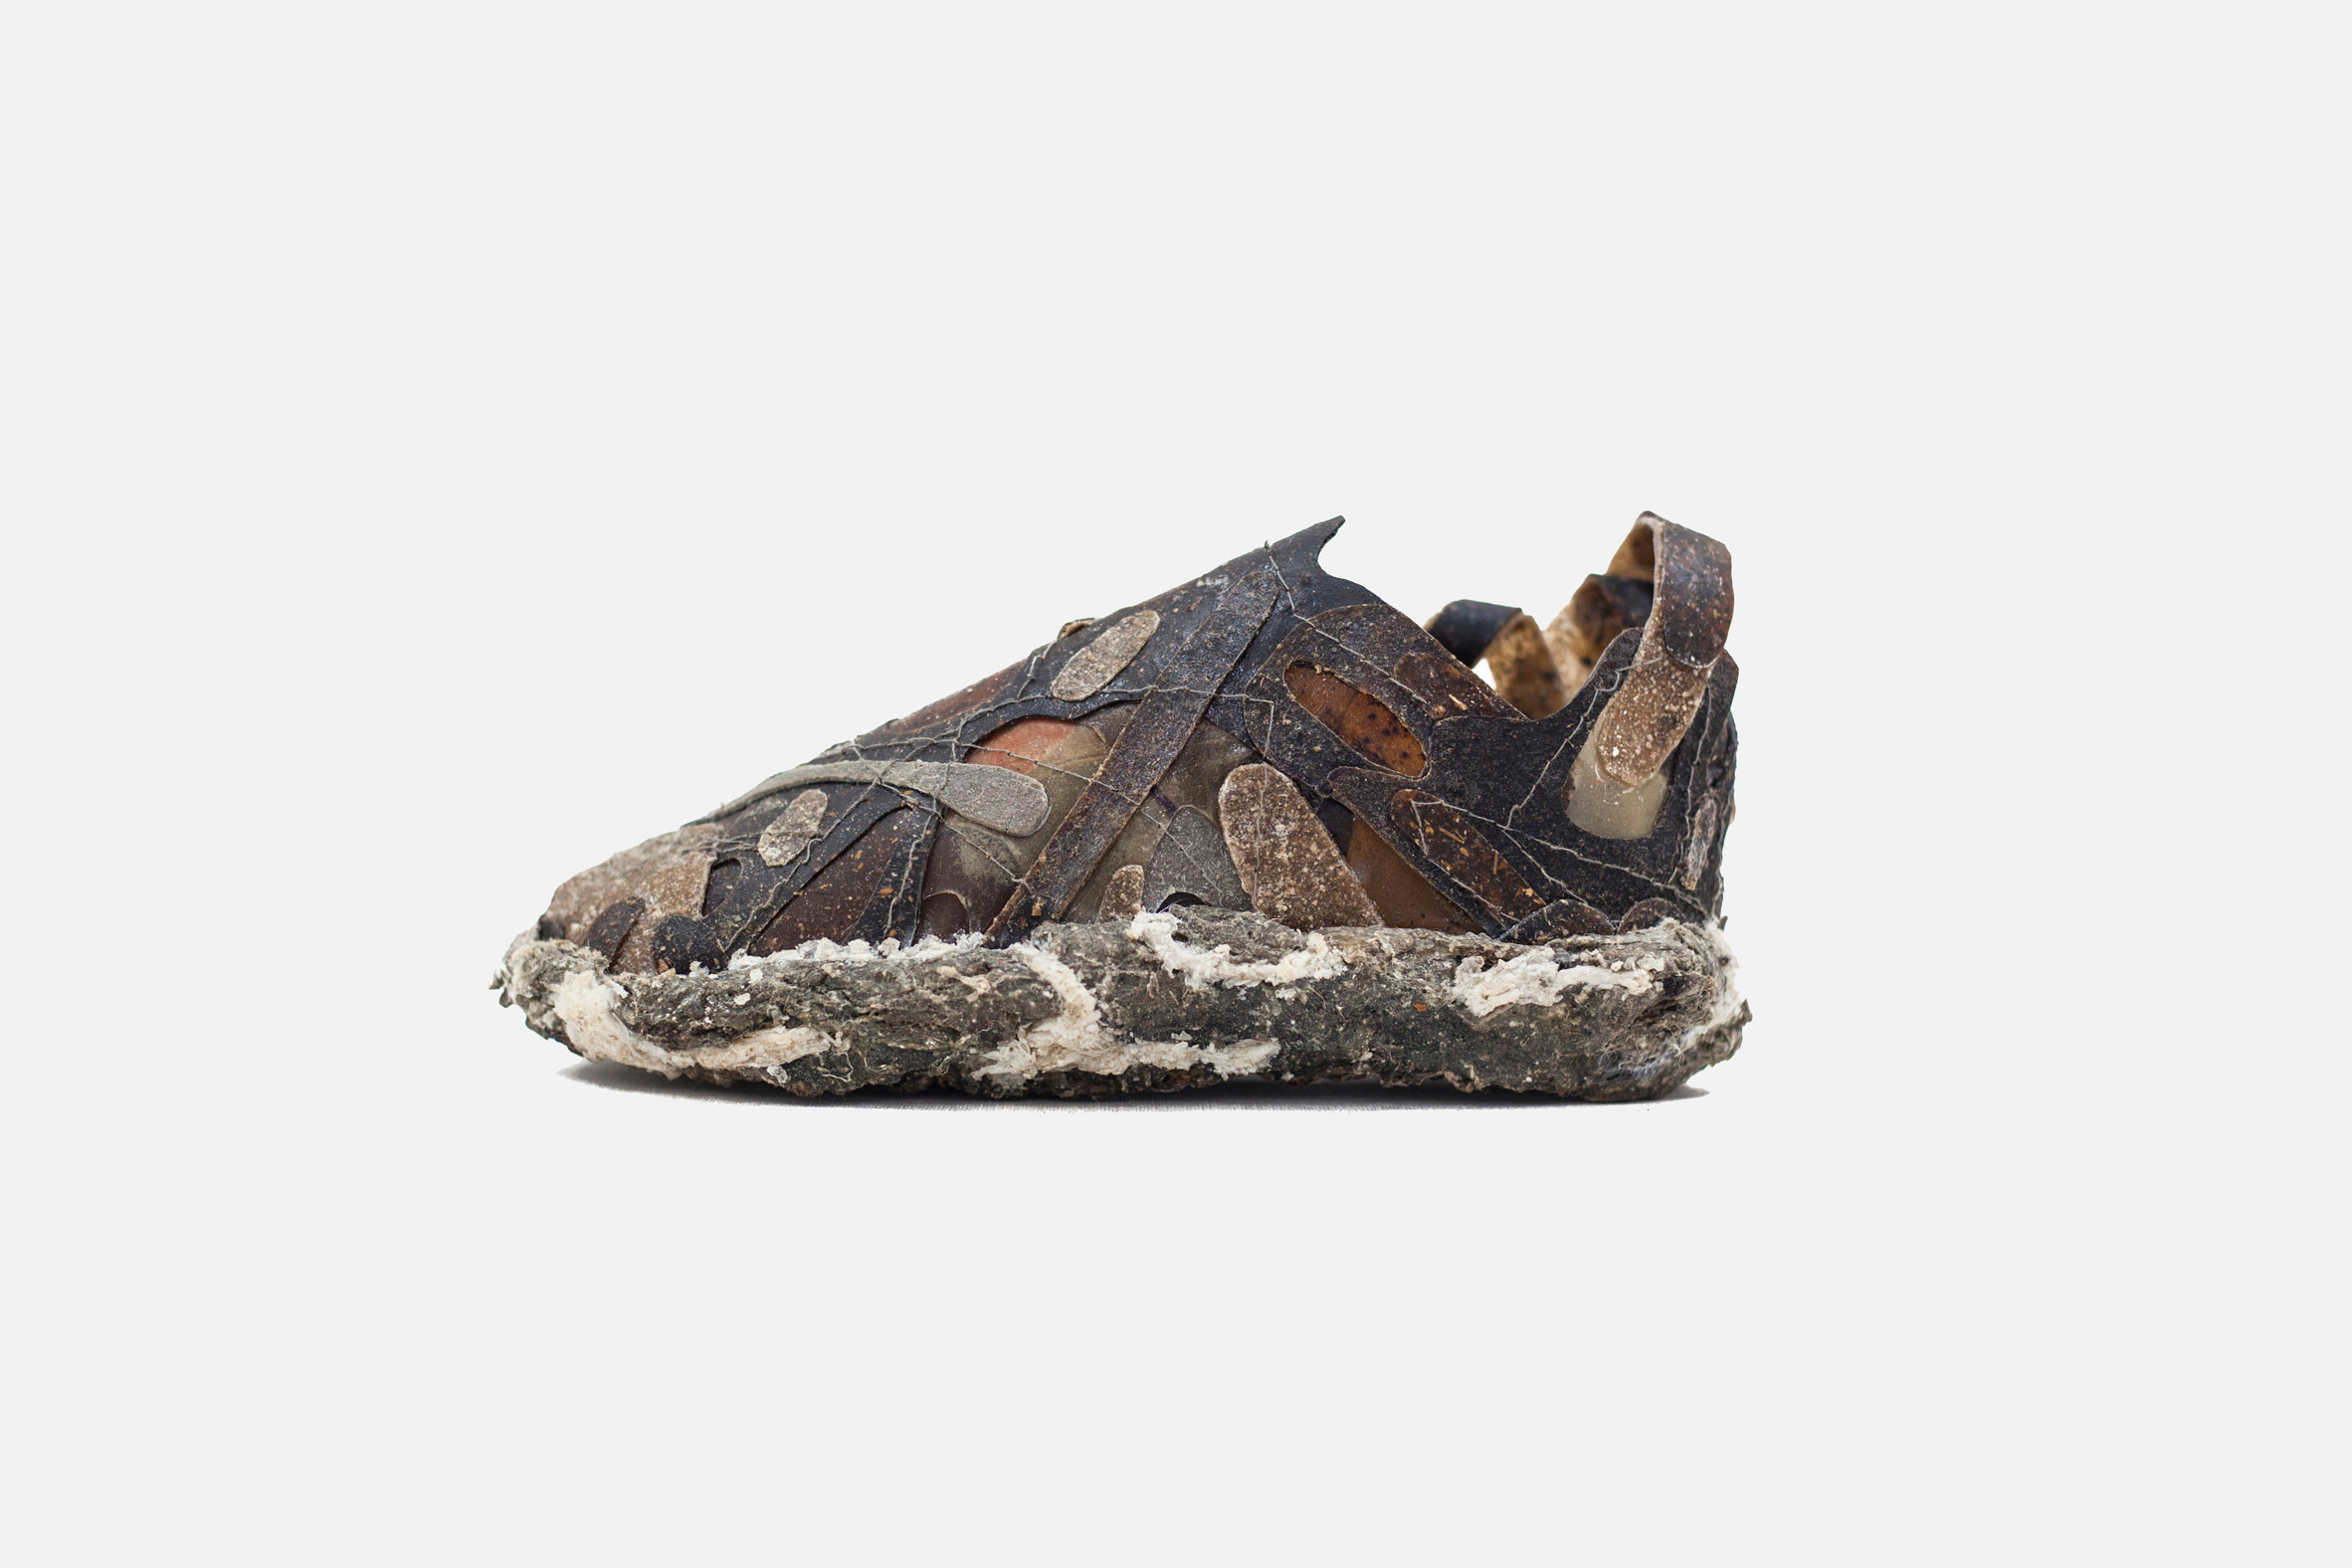 vedvarende ressource Stationær Altid Olaniyi Studio creates "living" footwear designed to decay